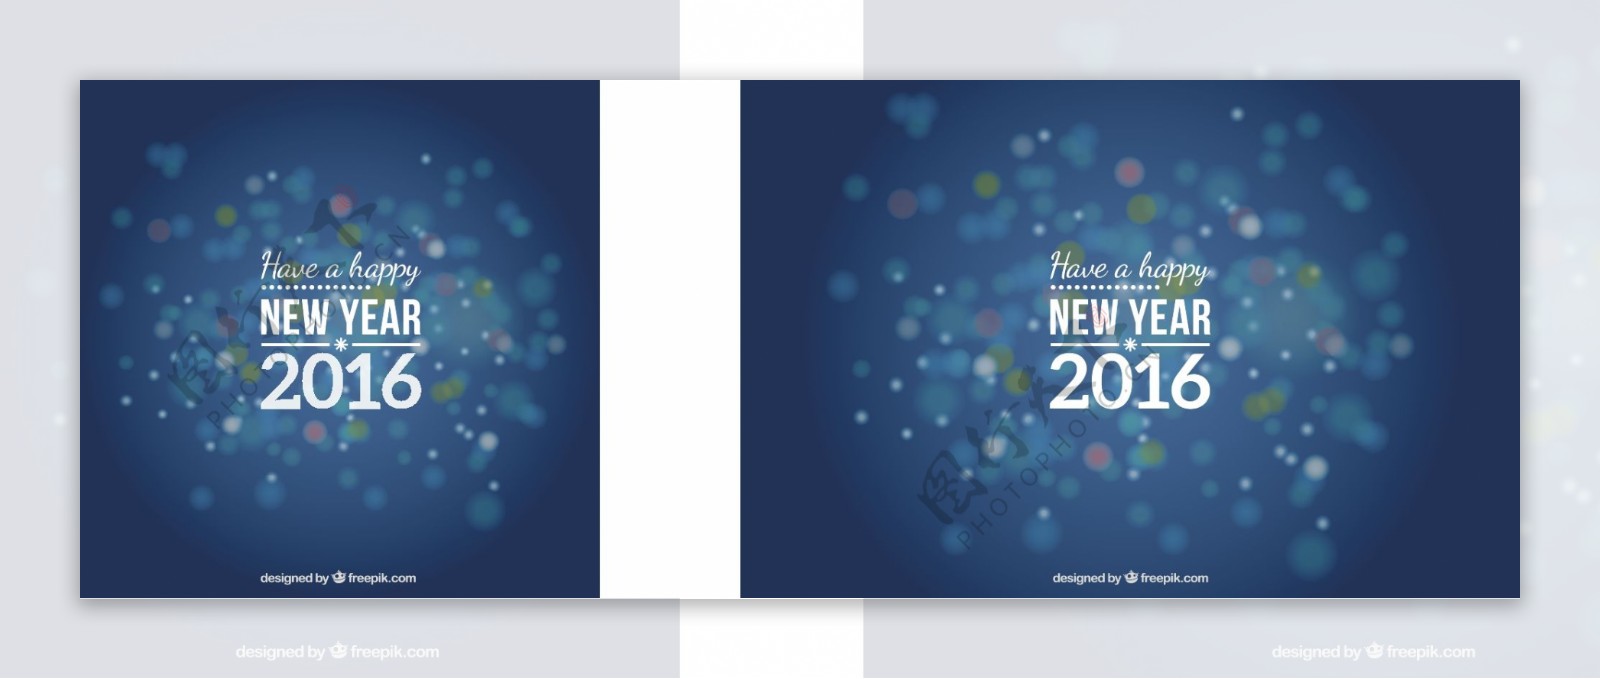 在新的一年的背景虚化风格的蓝色背景